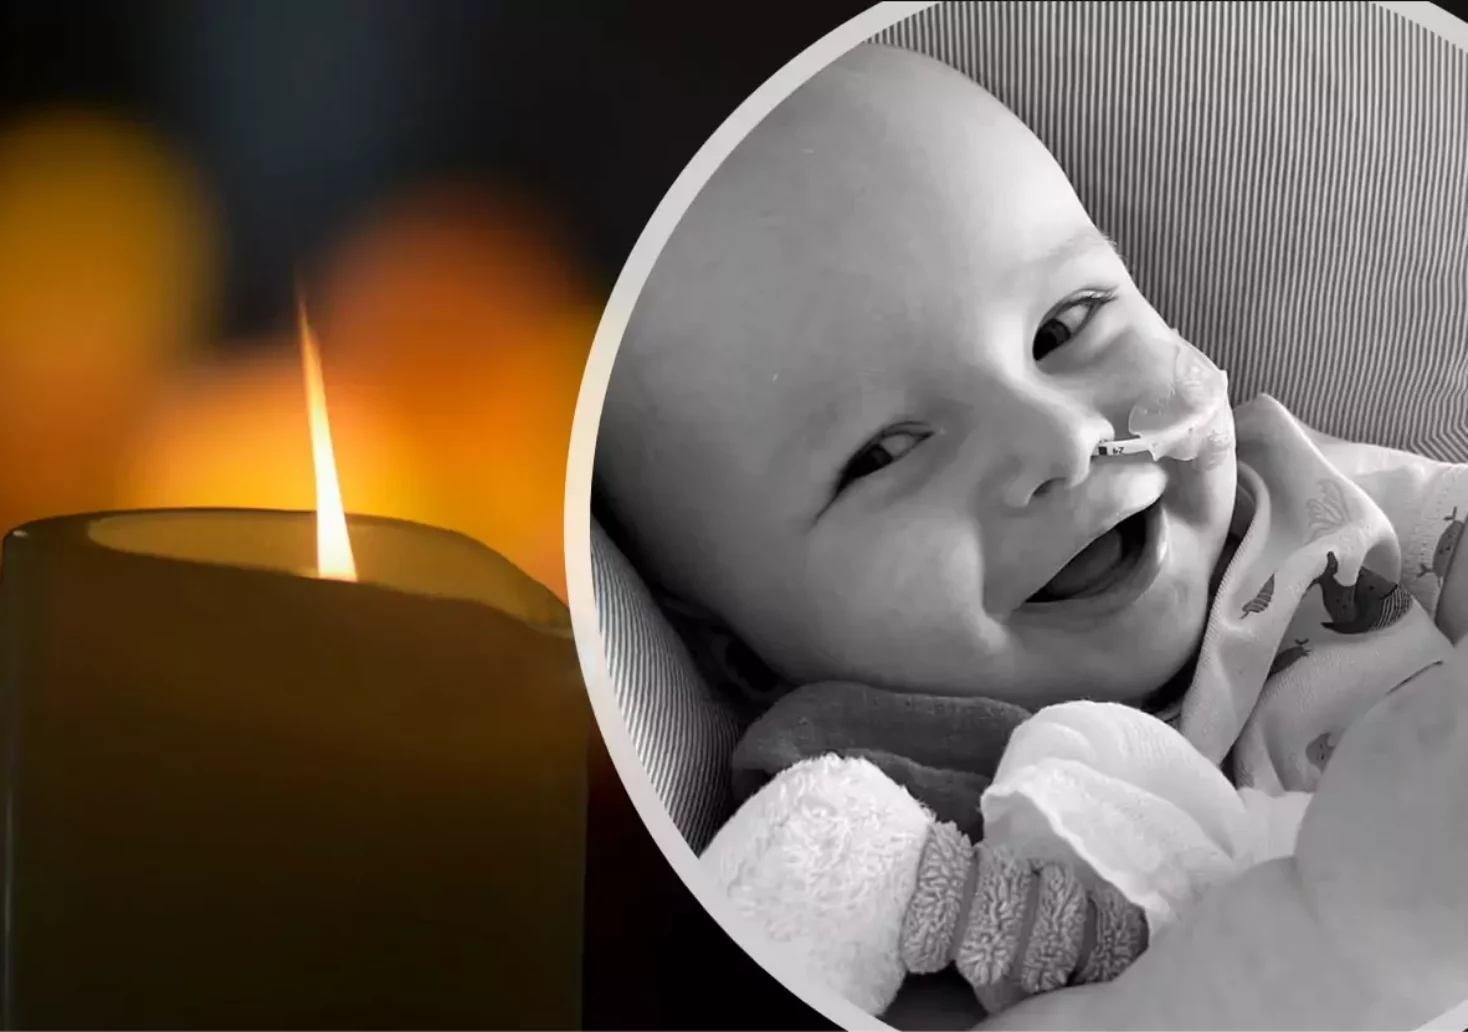 Bild auf 5min.at zeigt ein Baby und eine Kerze.